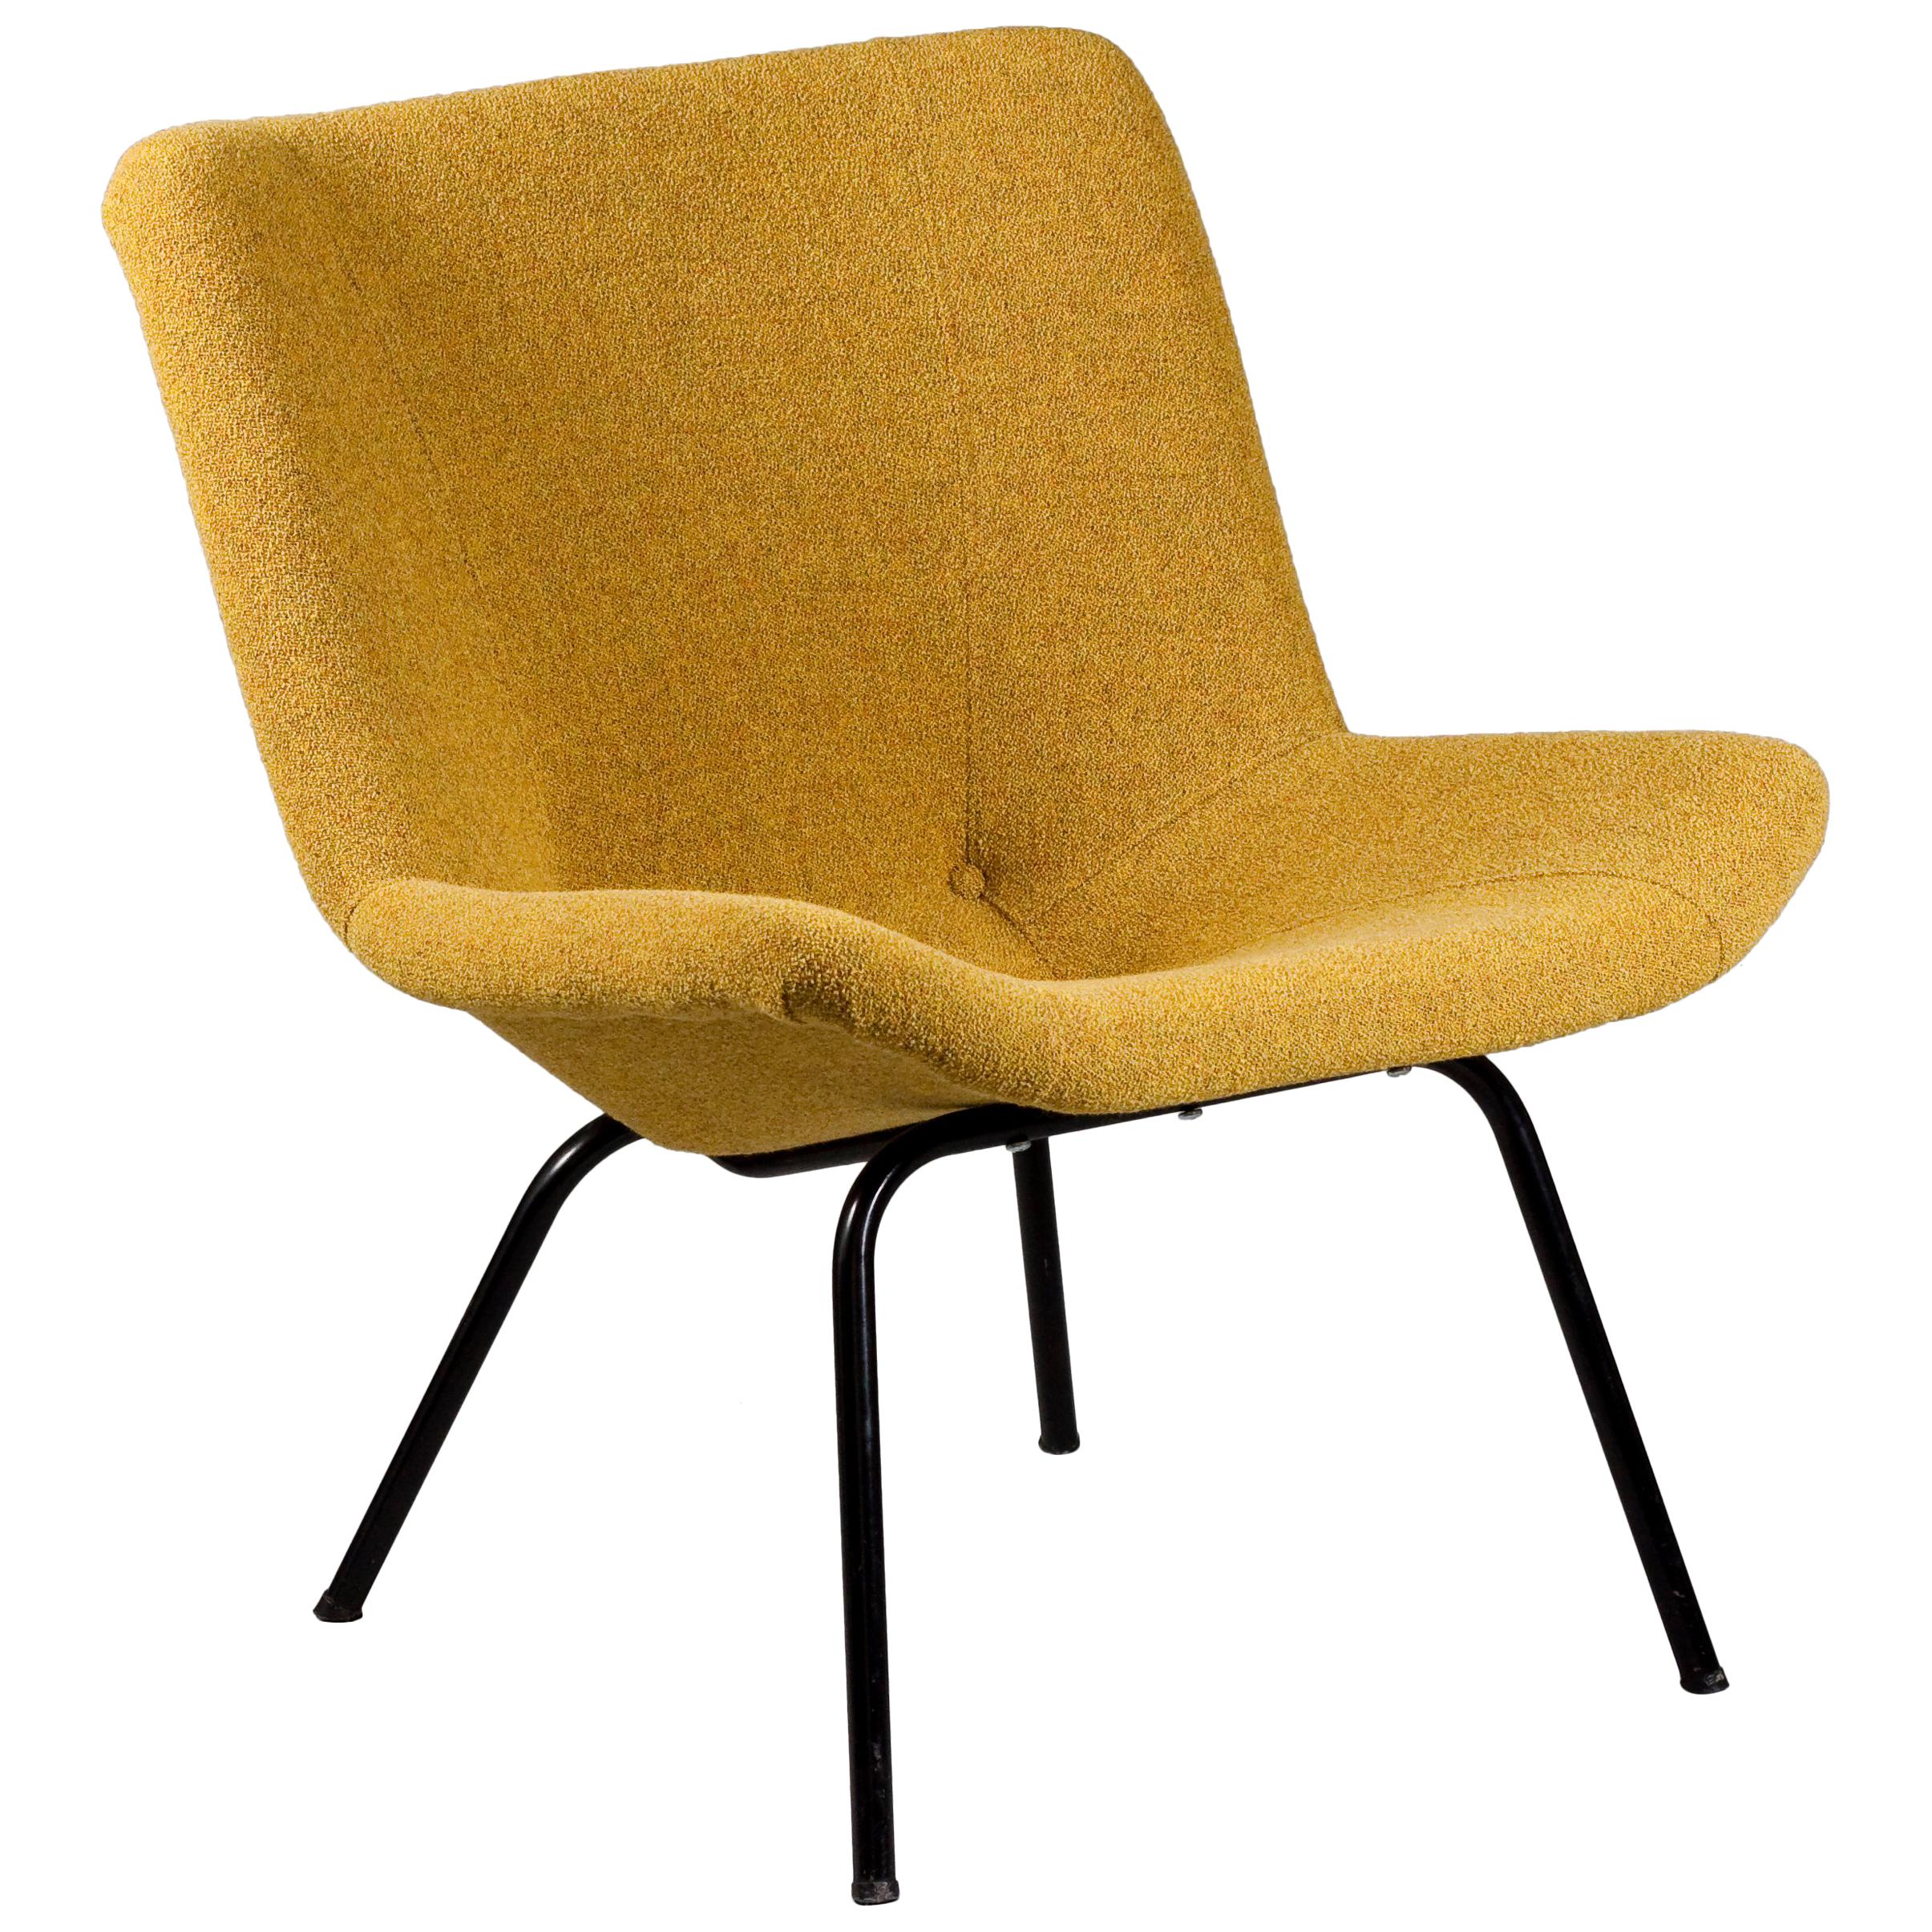 1950s Carl-Gustaf Hiort af Ornäs, Lehti "Leaf" Chair, Puunveisto Oy, Finland For Sale